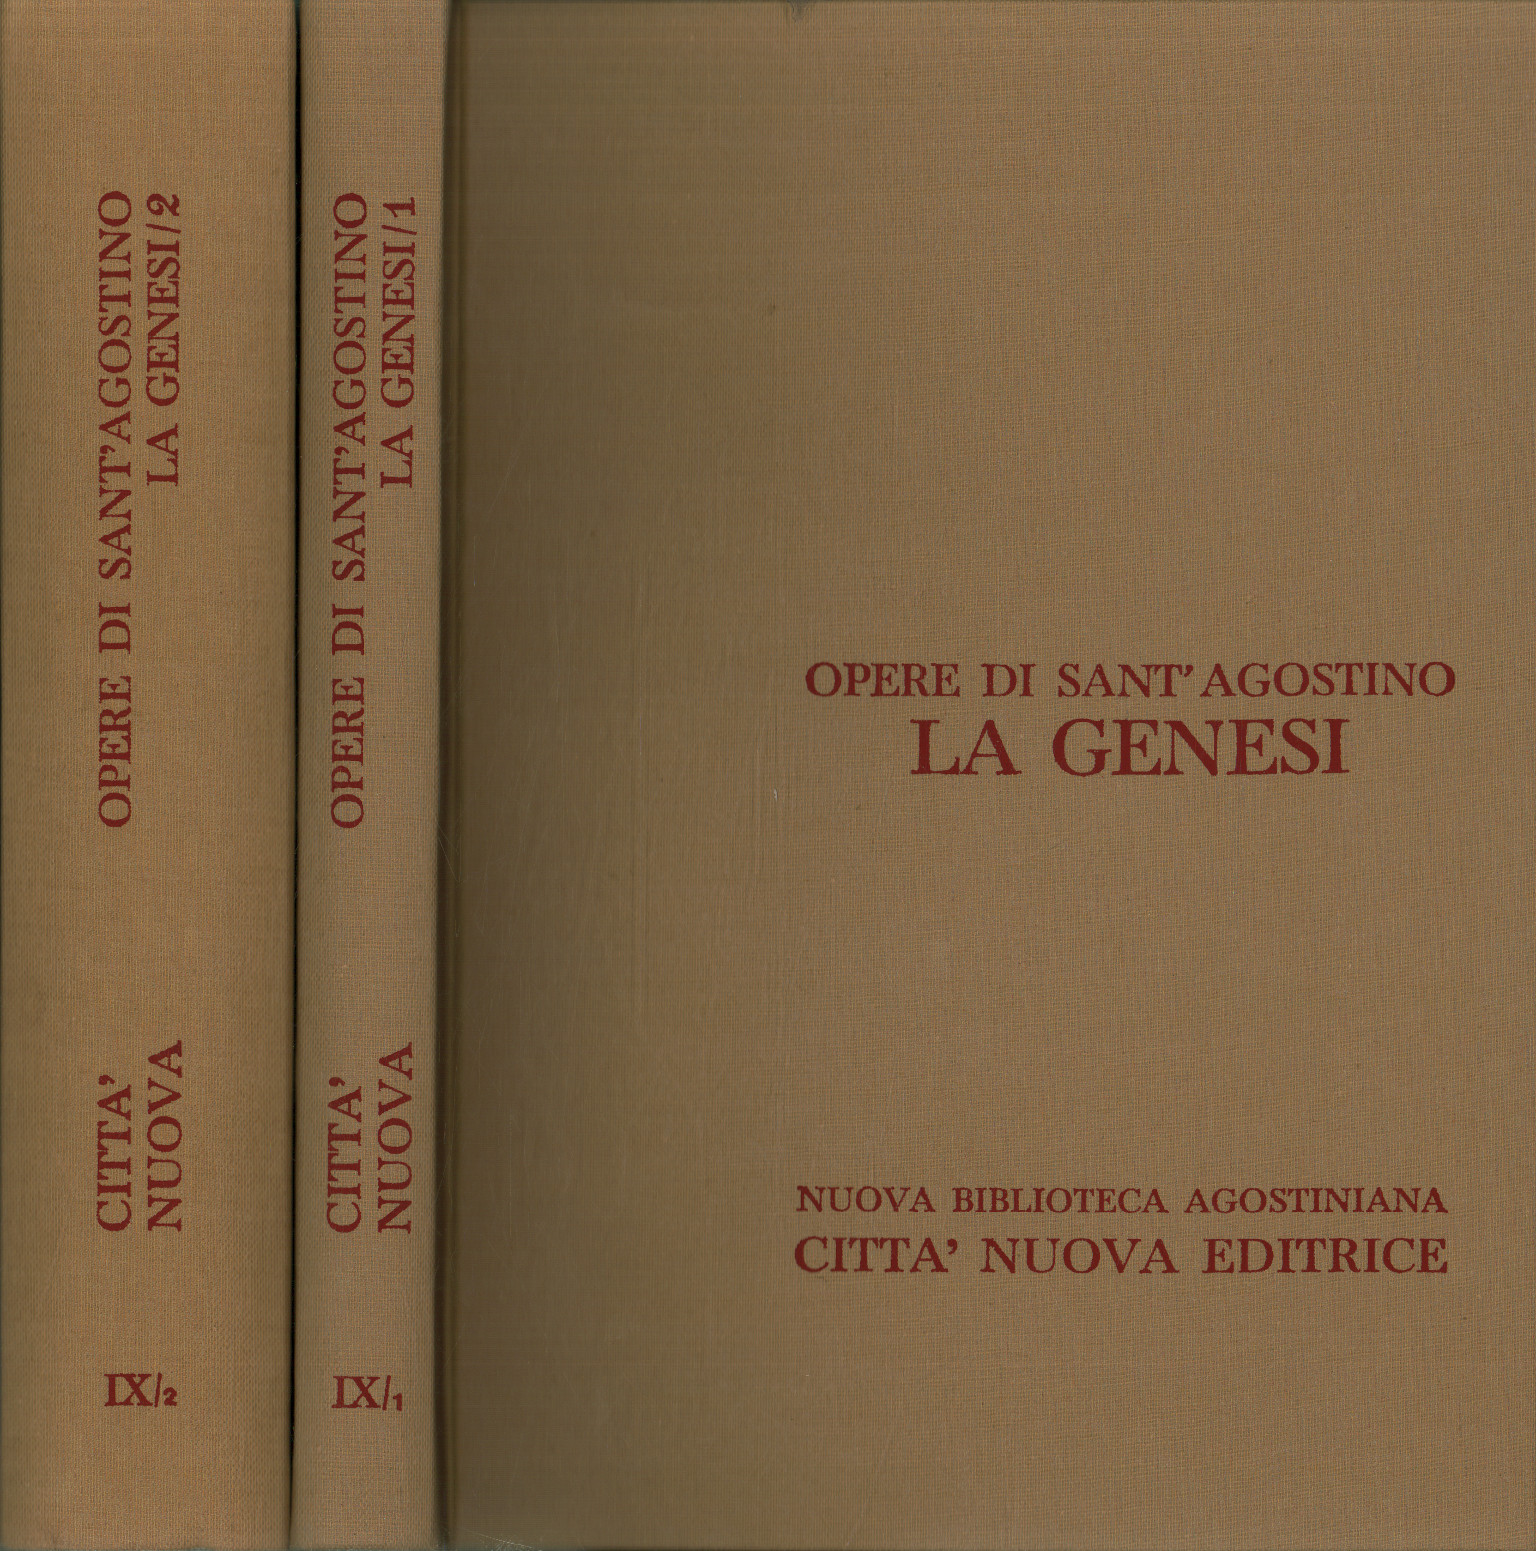 Werke von Sant'Agostino. Das Gen